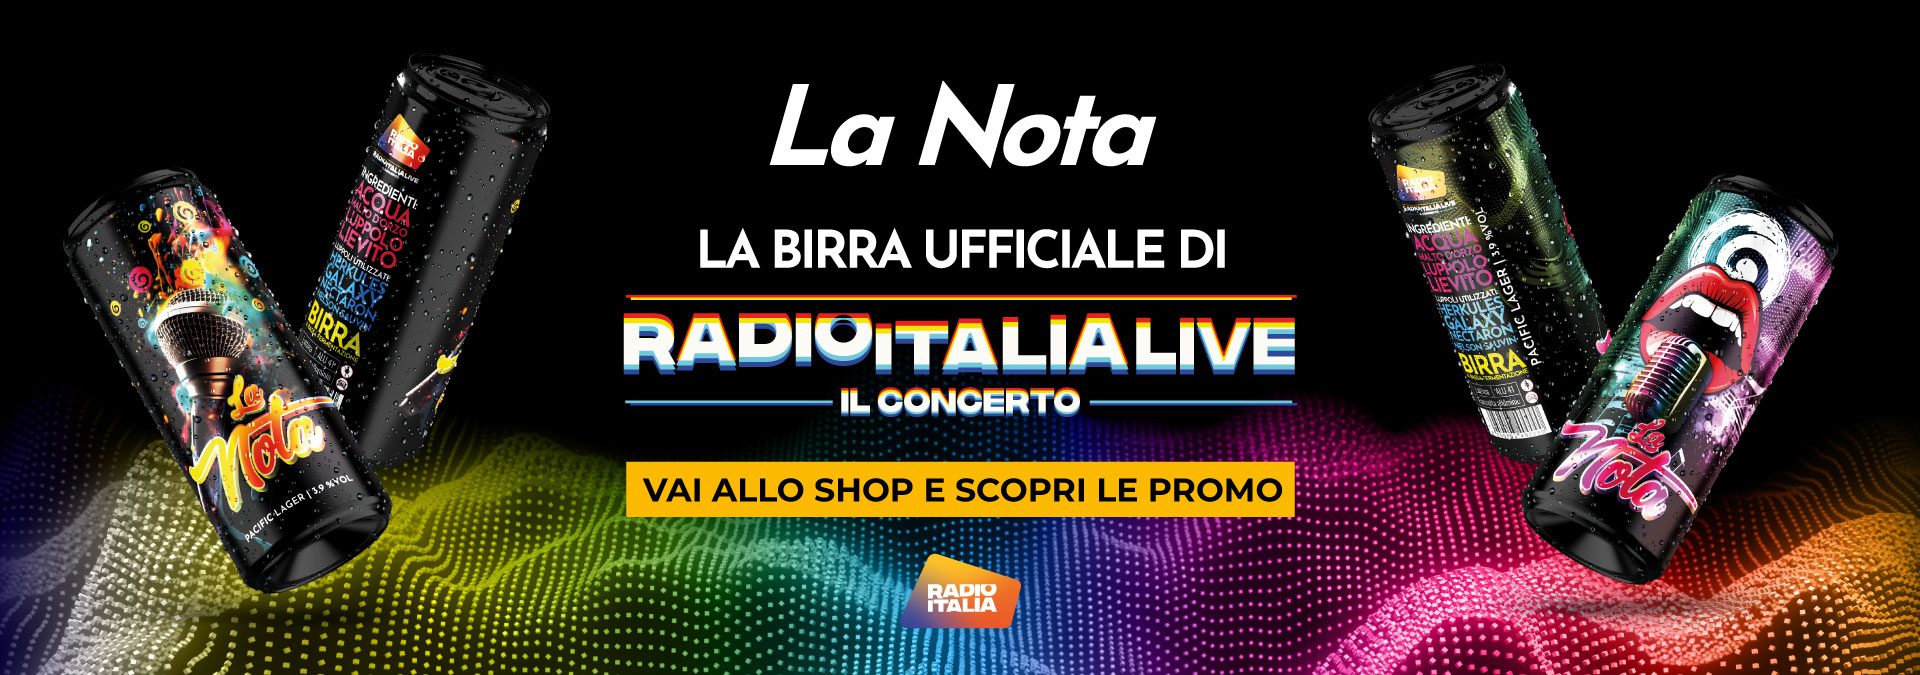 La Nota birra ufficiale Radio Italia - il concerto